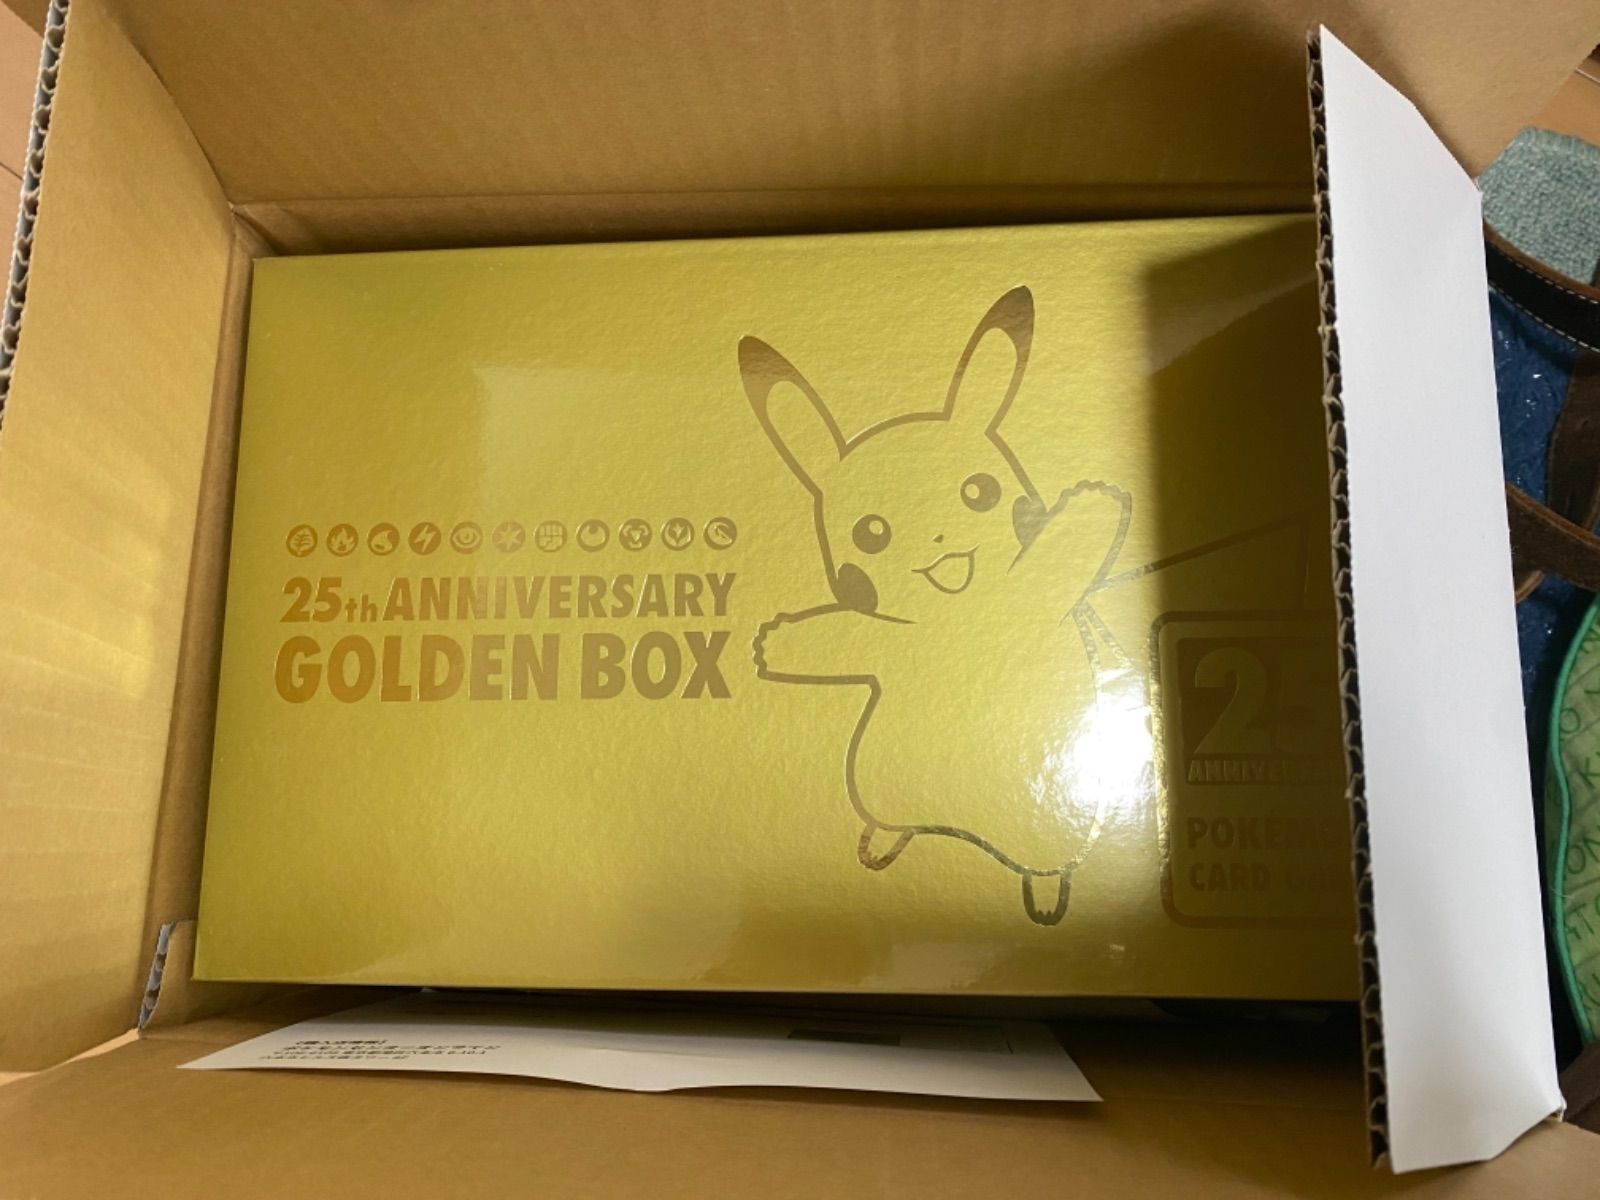 25th anniversary golden box 日本語版